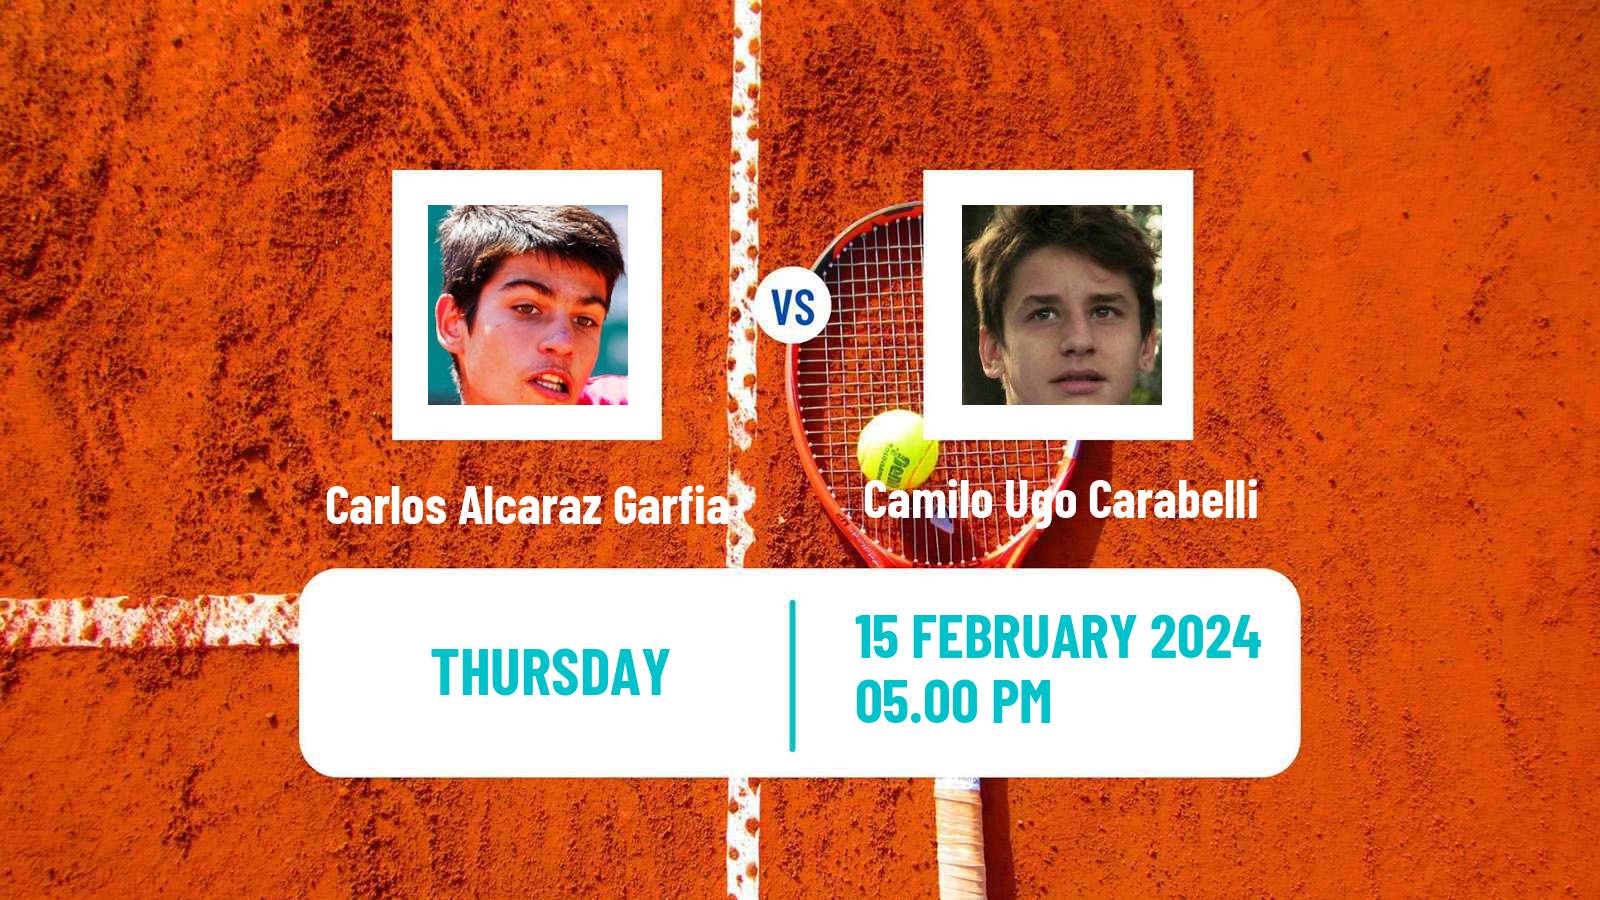 Tennis ATP Buenos Aires Carlos Alcaraz Garfia - Camilo Ugo Carabelli